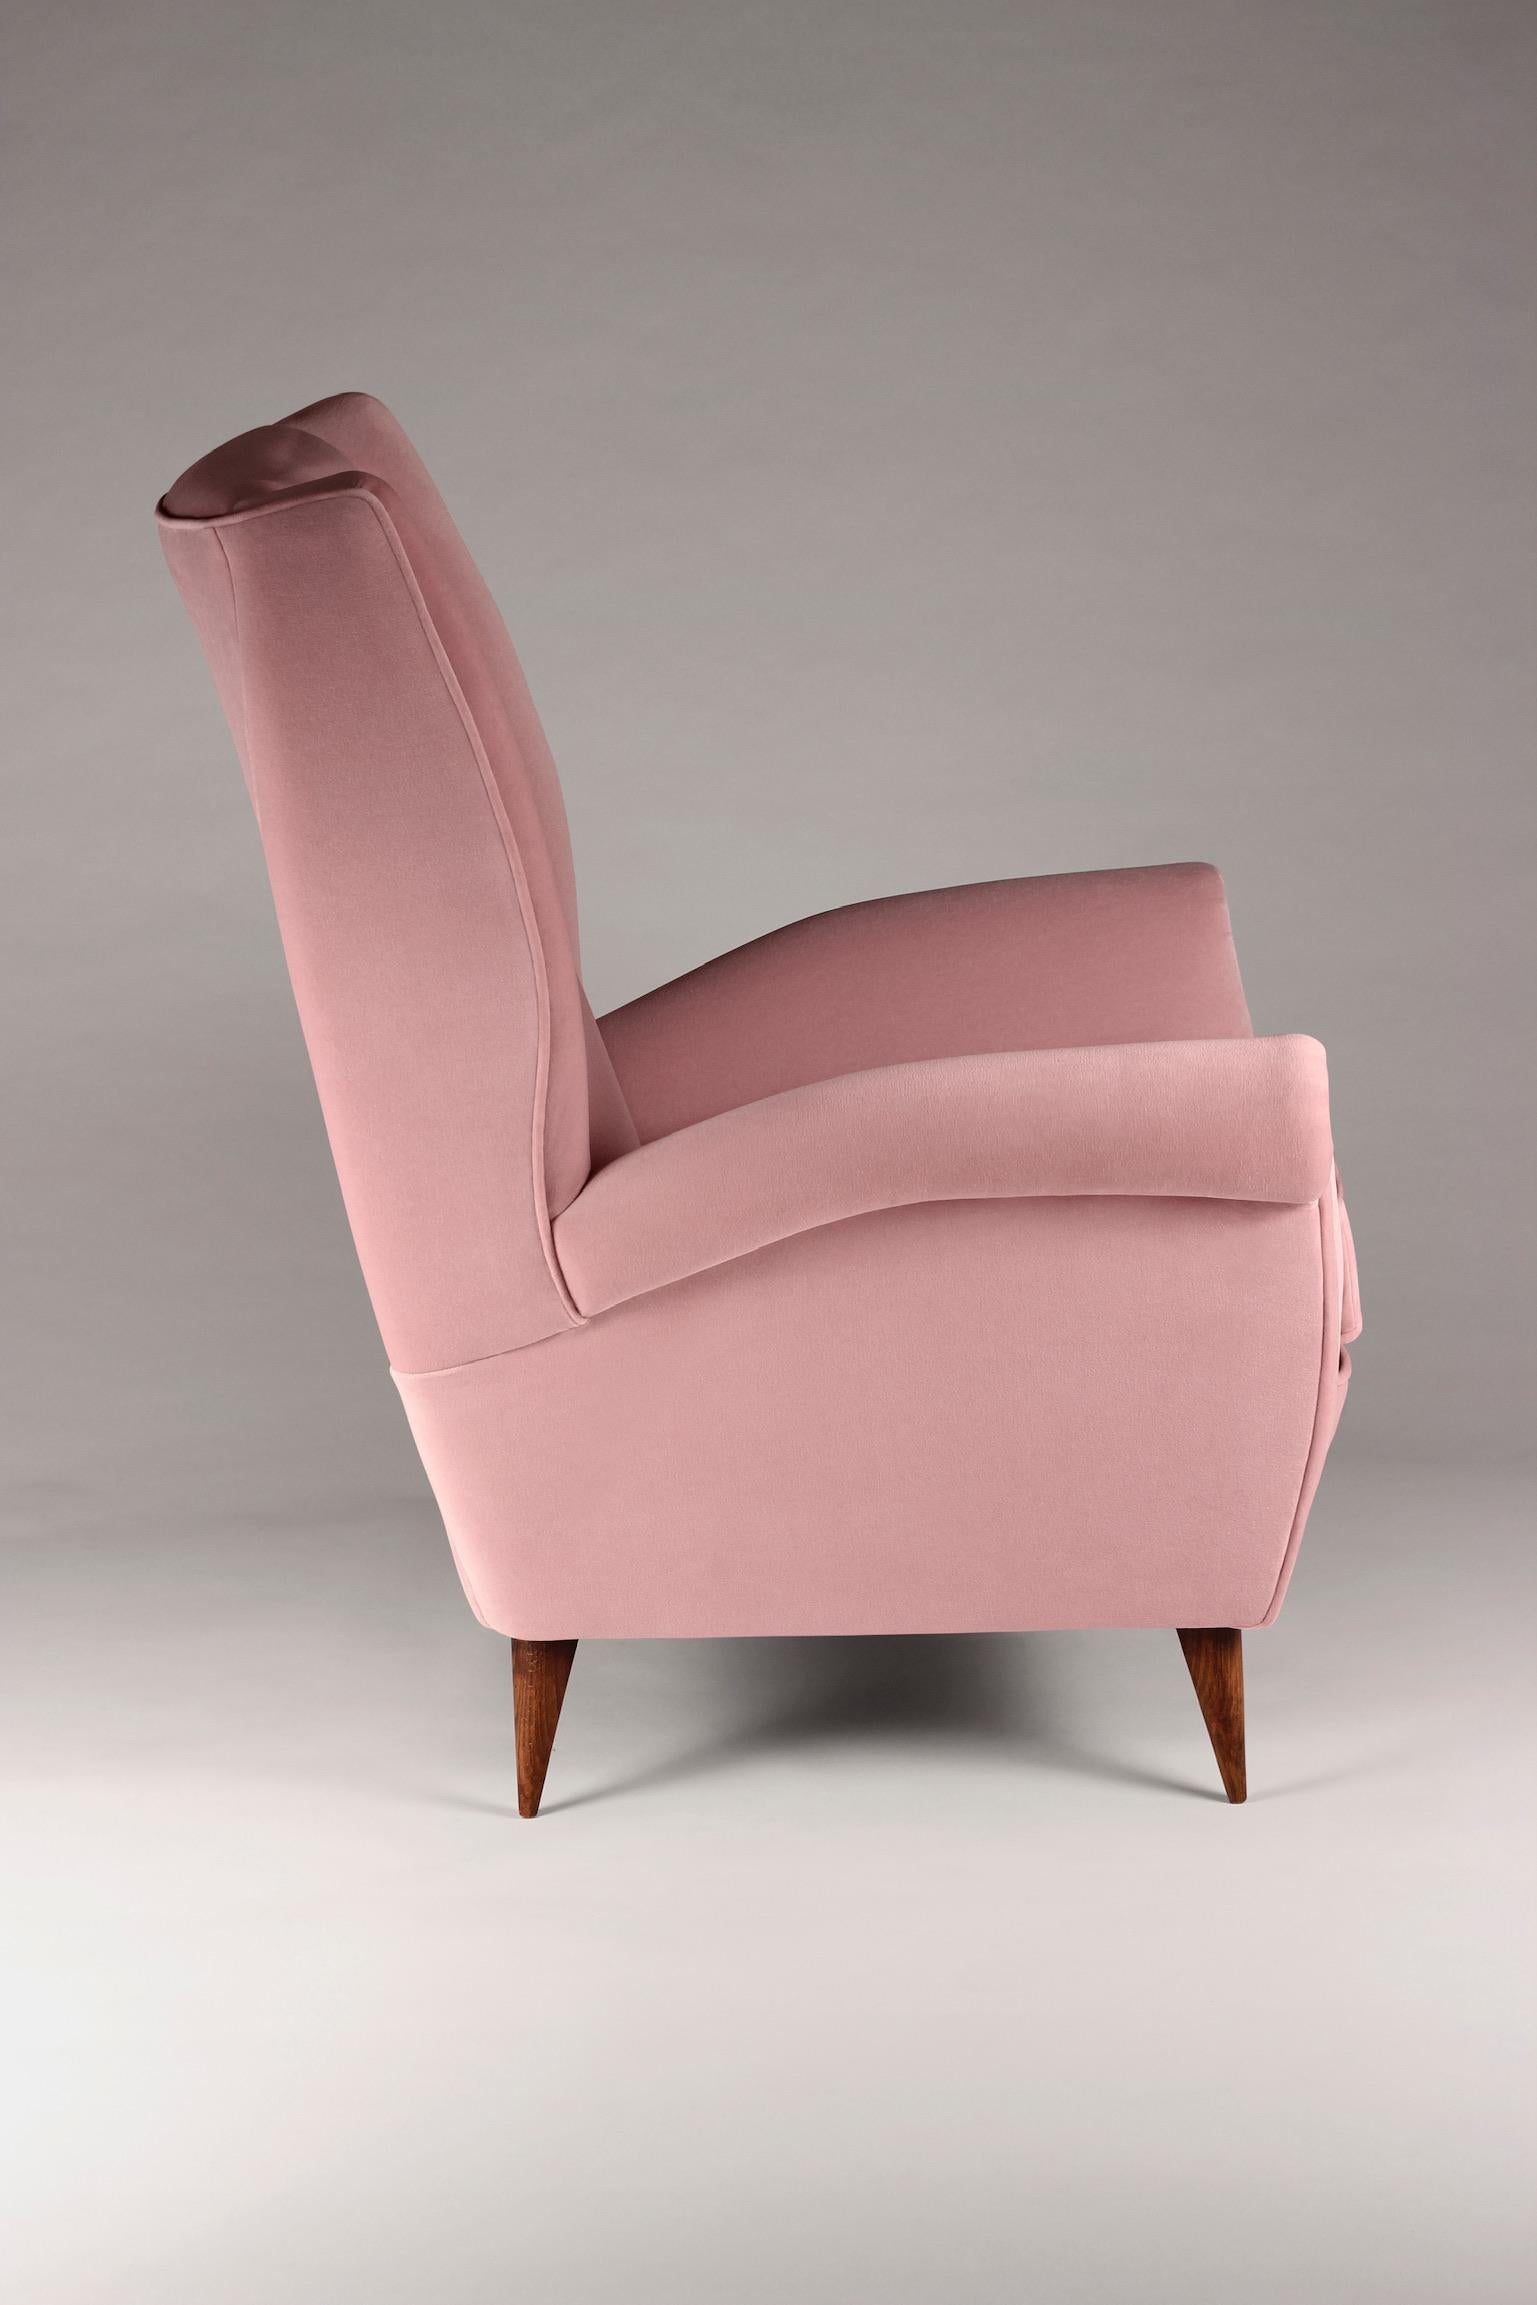 Der Loungesessel 'Marcello' mit hoher Rückenlehne wurde vom stilvollen italienischen Design der 1950er Jahre inspiriert und wird nun von englischen Handwerkern für das 21. Jahrhundert entworfen. Wir haben einen Loungesessel entwickelt, der in